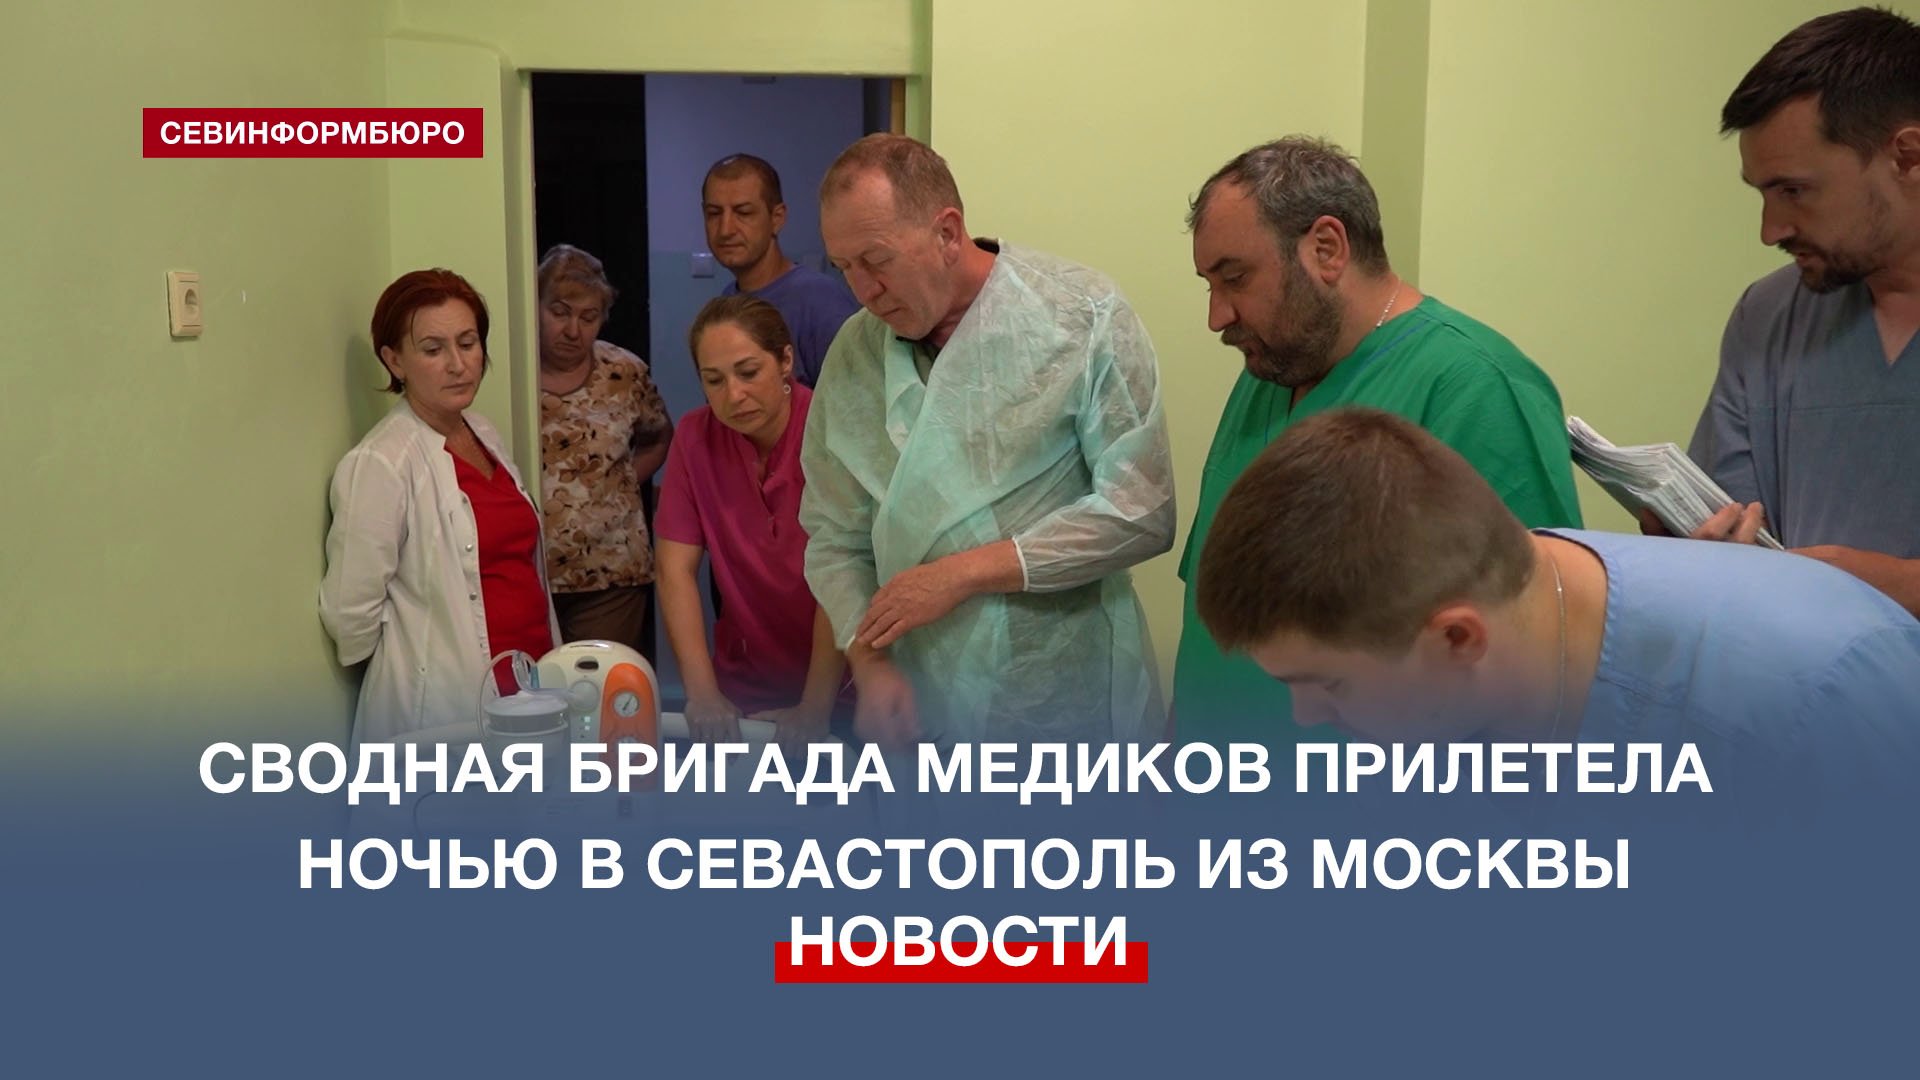 Сводная бригада медиков прилетела ночью в Севастополь из Москвы